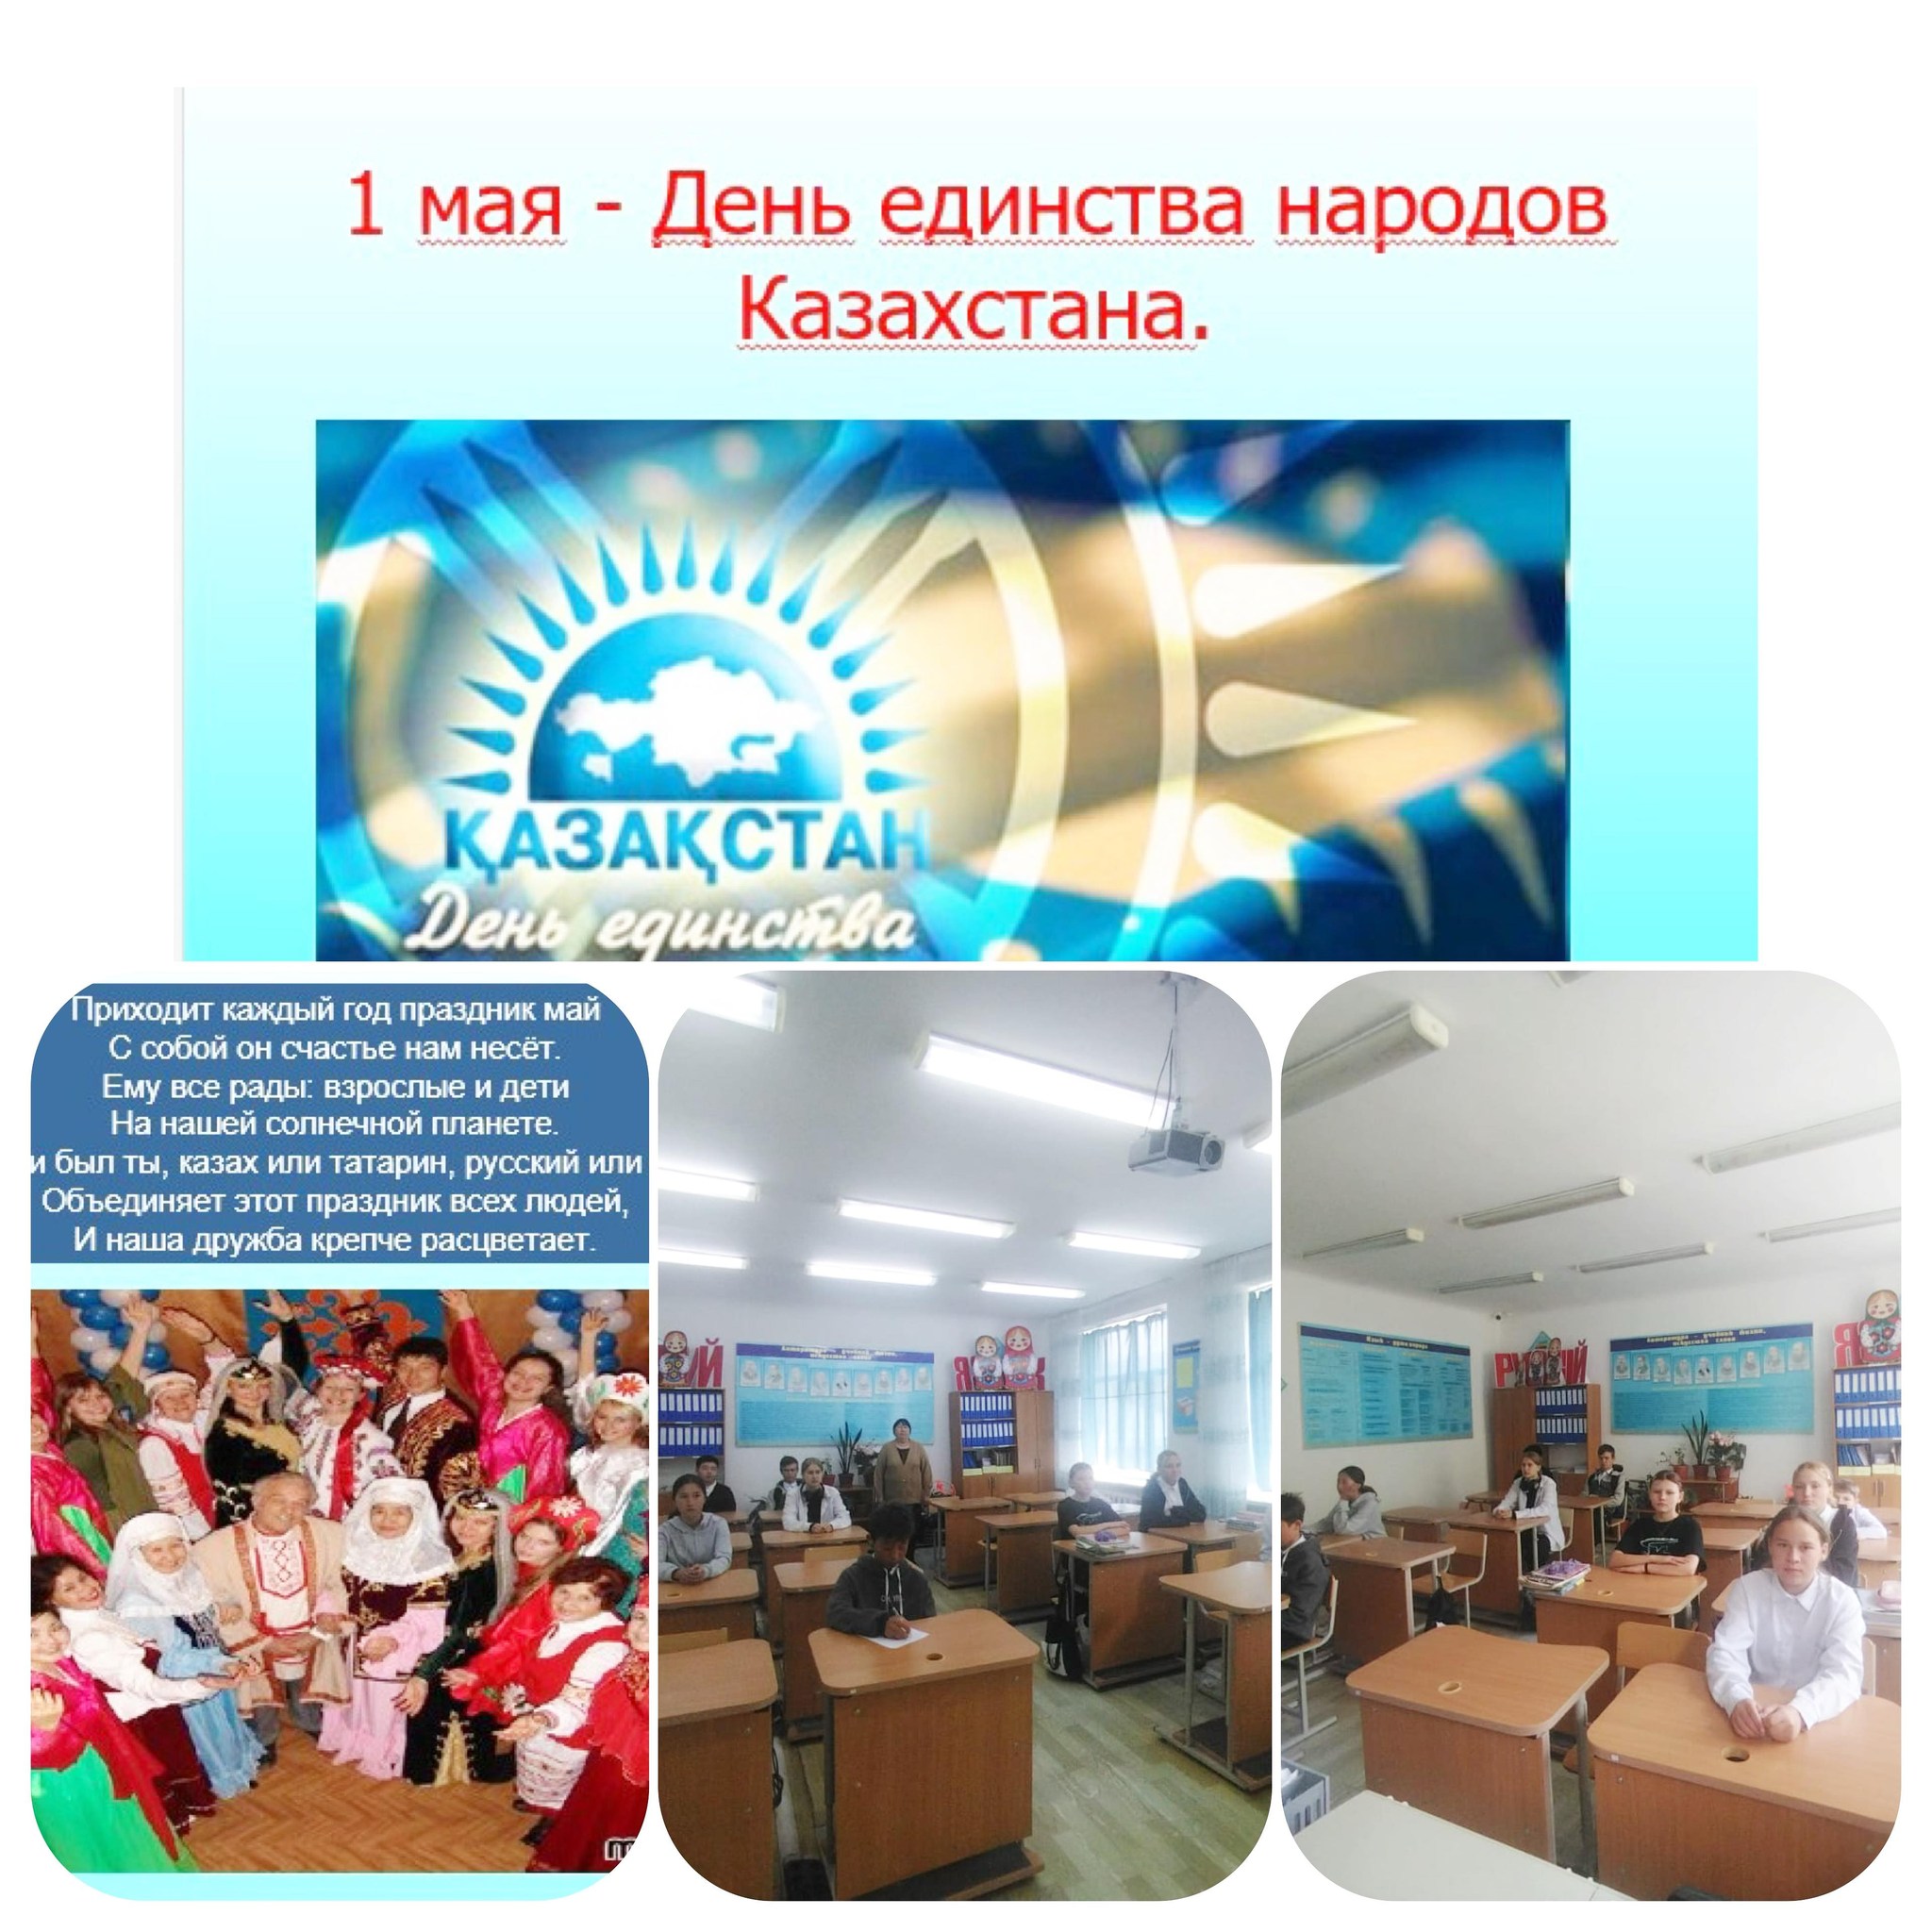 Прошел классный час в 6-7-9 классах на тему: 1 мая - День единства народов Казахстана “Единство Казахстана -в дружбе народов”.